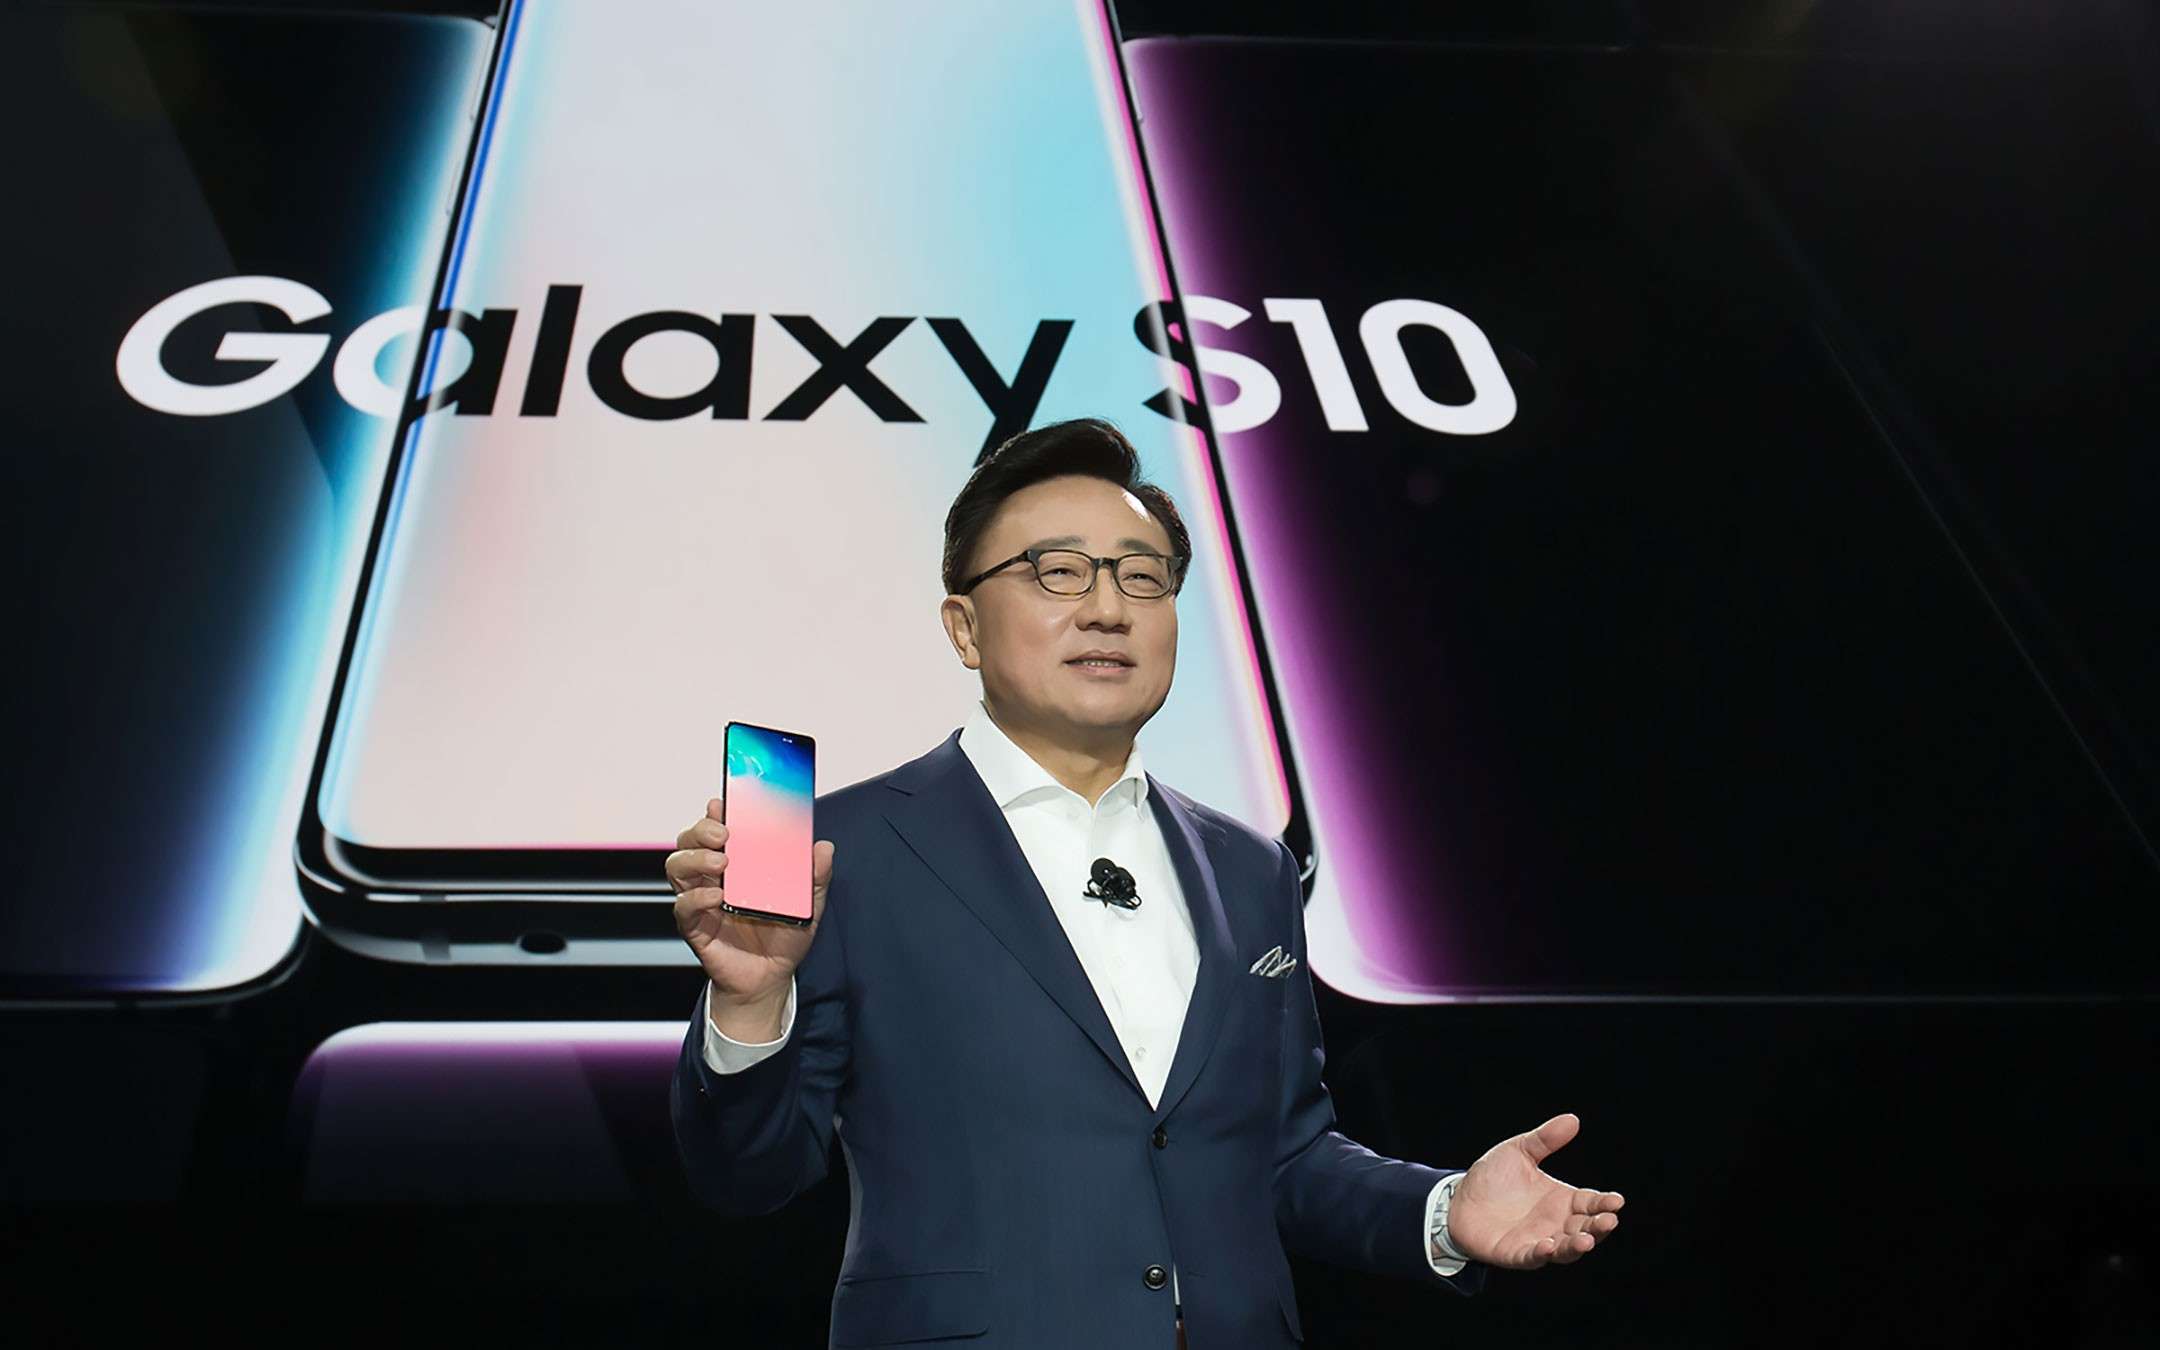 Samsung spiega come l'lA migliora i Galaxy S10